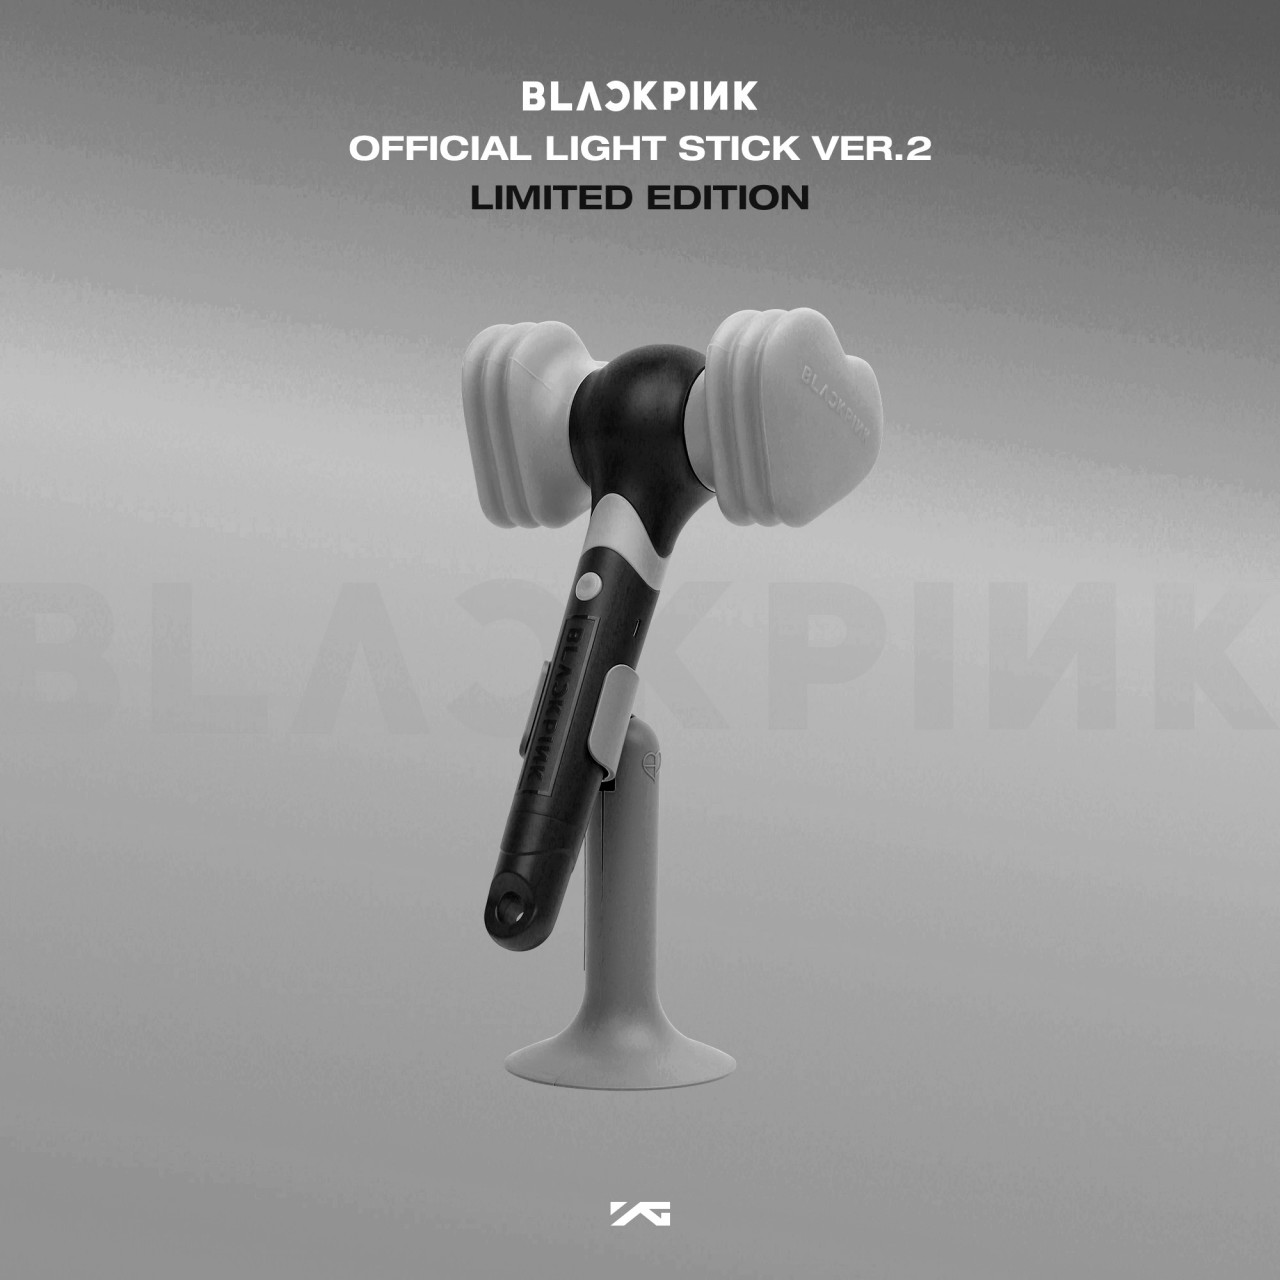 BLACKPINK LIGHT STICK Ver. 2 PER-ORDER EVENT2020.11.13. - until the  pre-order ends EVENT - YG SELECT